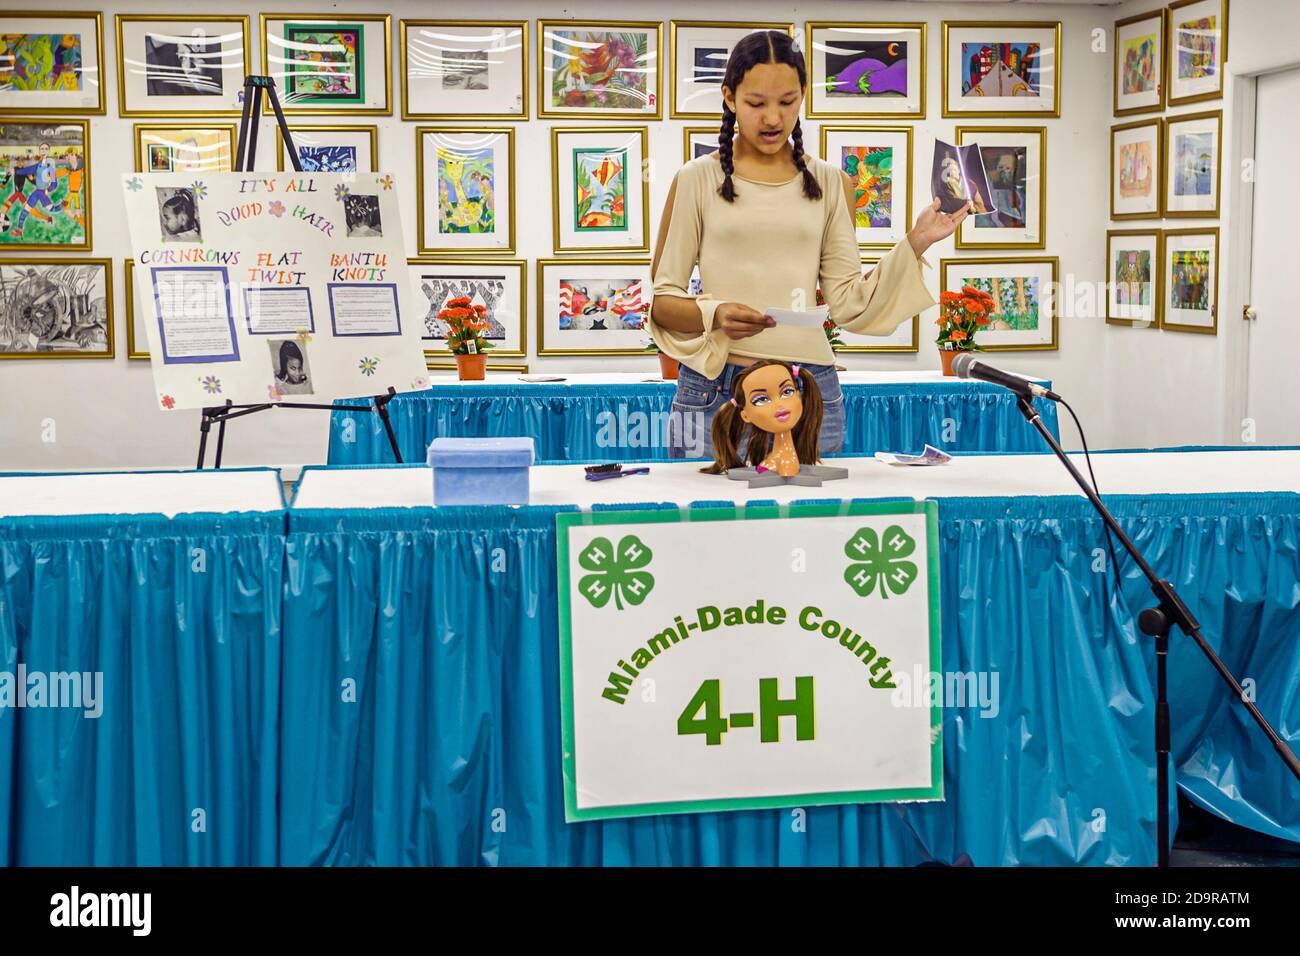 Miami Florida, Dade County Fair & Exposition, jährliche Veranstaltung Jugendprogramme Ausstellungen 4-H Club, öffentlich sprechende Wettbewerb Teenager Student Mädchen macht Stockfoto